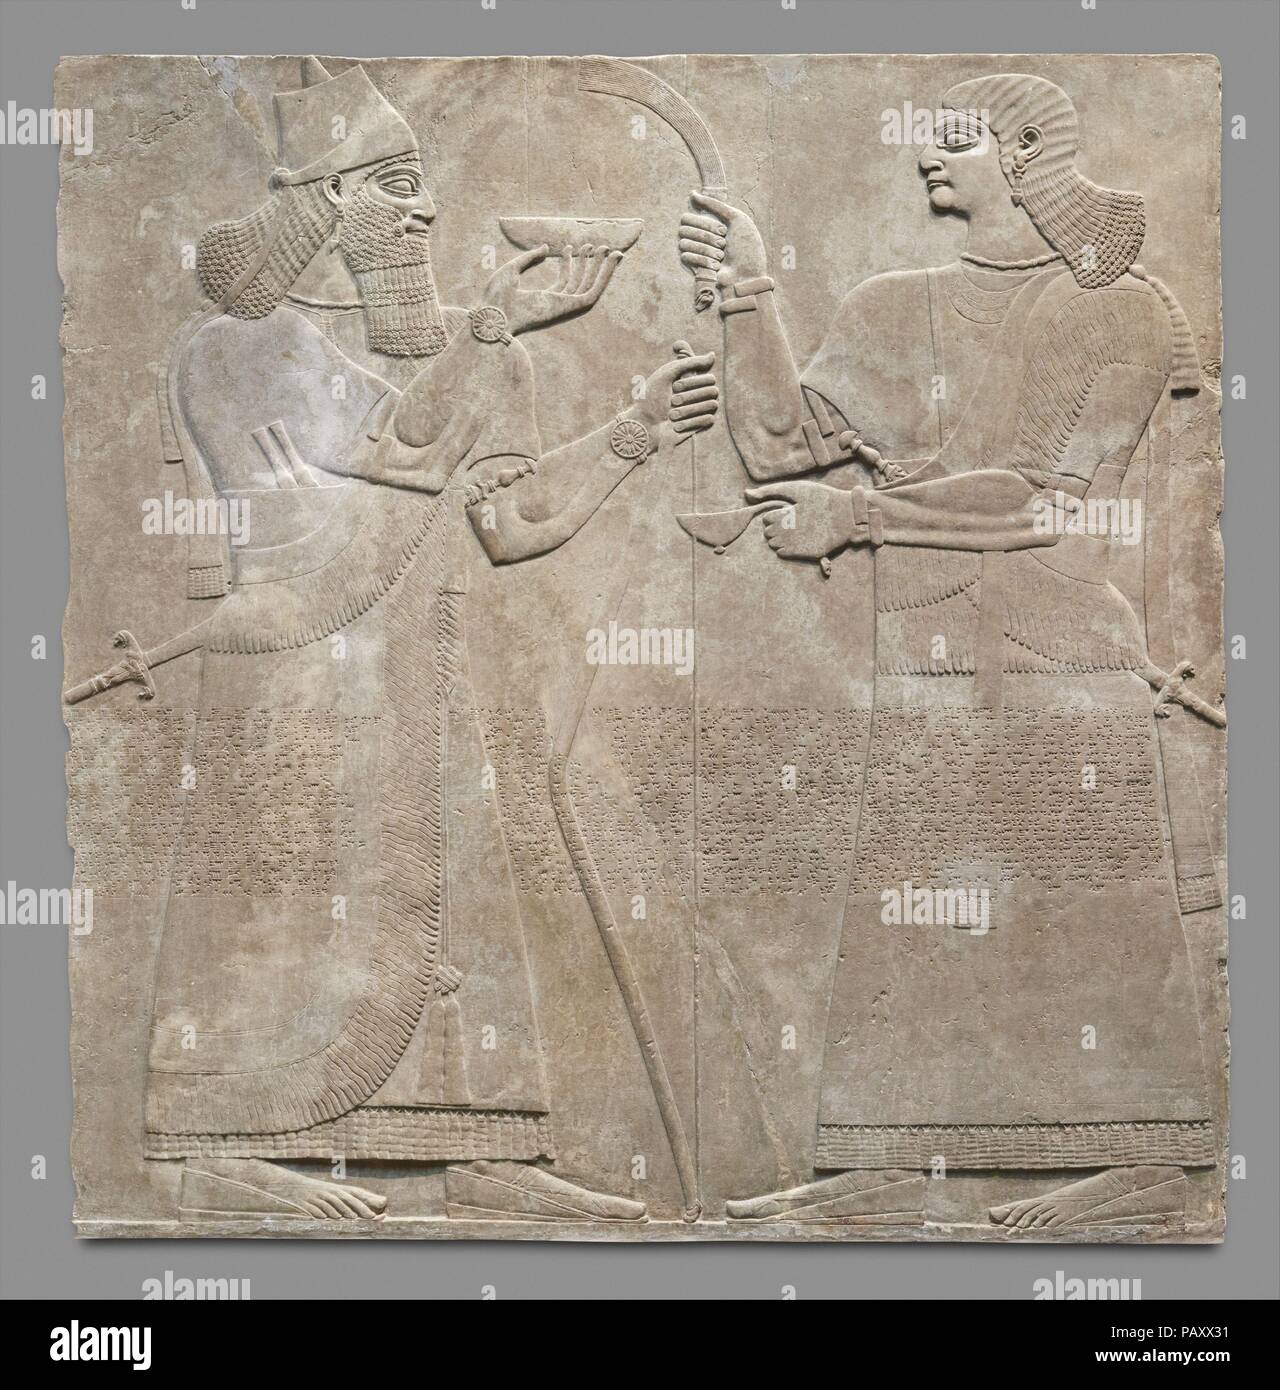 Pannello di sfiato. Cultura: Assiro l. Dimensioni: 92 1/4 x 92 x 4 1/2 in. (234.3 x 233,7 x 11,4 cm). Data: ca. 883-859 A.C. Questo rilievo, dal palazzo del re assiro Ashurnasirpal II (r. ca. 883-859 a.C.), rappresenta un re, probabilmente Ashurnasirpal se stesso e di un operatore. I due più grandi di quelle di life-piccole figure sono scolpite in bassorilievo e come con altri rilievi nel palazzo con l immagine del re, il carving è particolarmente sottile e mostra una speciale attenzione ai dettagli. Il pannello si unisce un secondo rilievo che mostra un ulteriore attendant, affrontando anche il re e un alato p soprannaturale Foto Stock